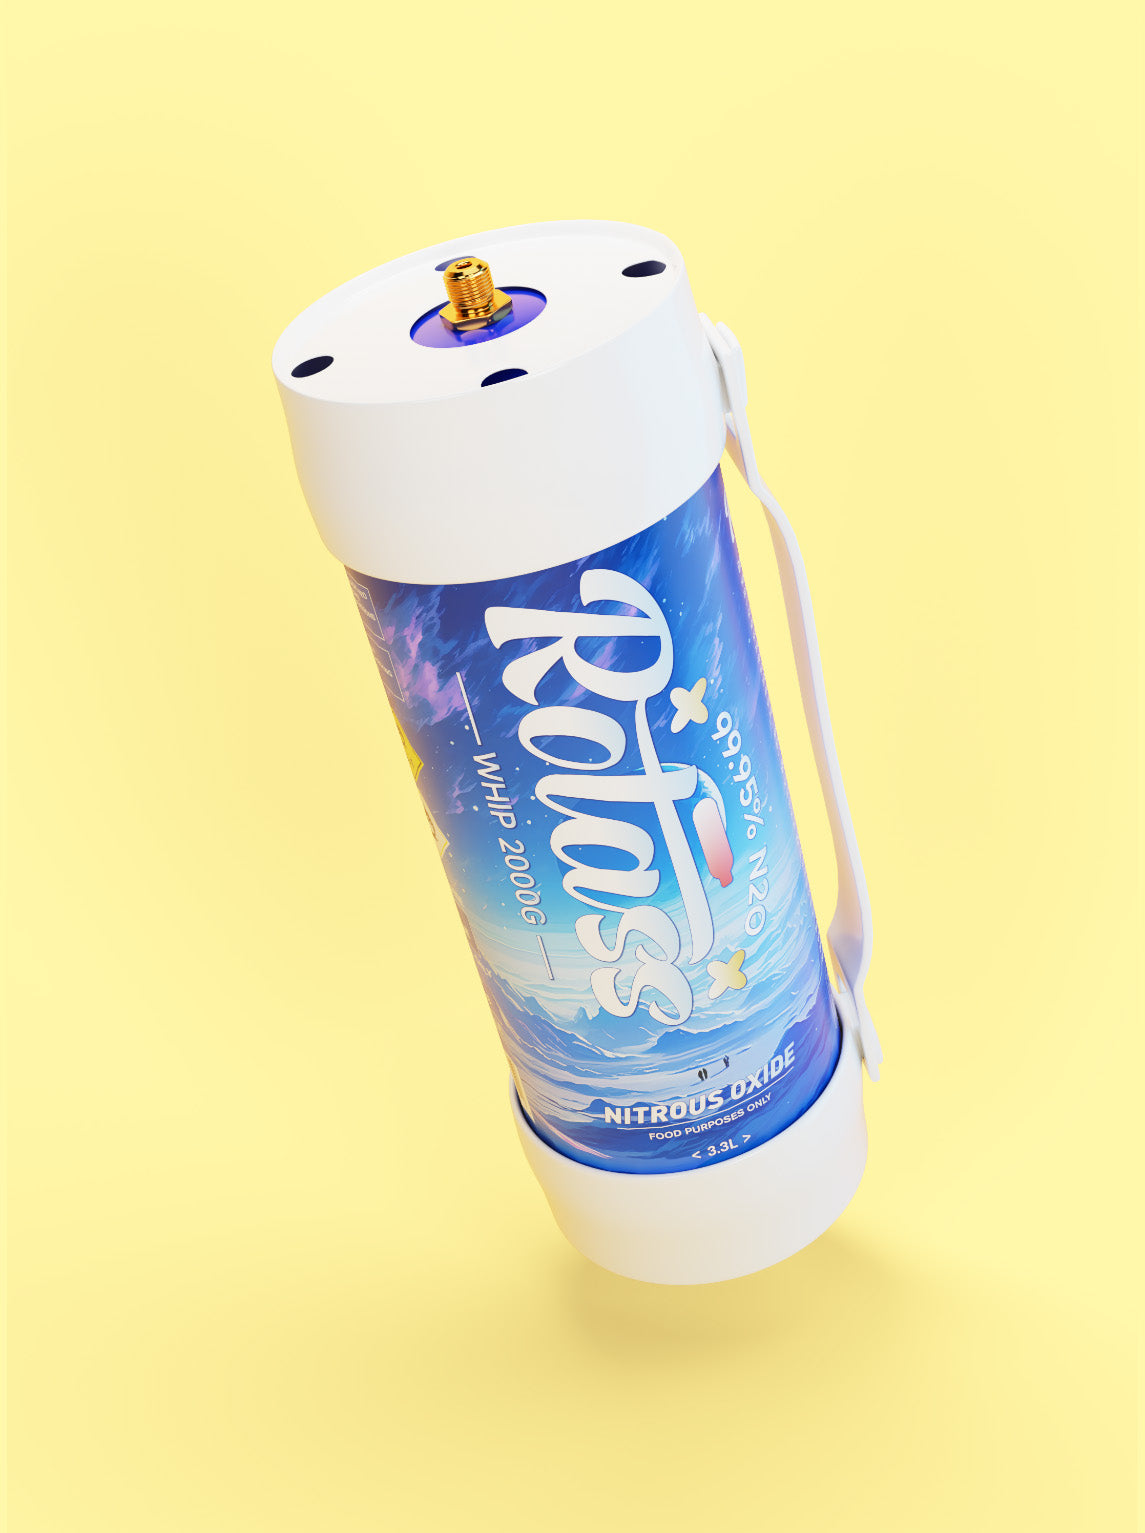  Gekippte Ansicht: Die Gasflasche ist im Antarktis-Style designed, mit dem weißen Logo "Rotass".  Unter- und Oberteil der Flasche sind weiß und mit einem Gummiband befestige, sodass eine Tragmöglichkeit gewährleistet ist. Der Hintergrund ist hellgelb.